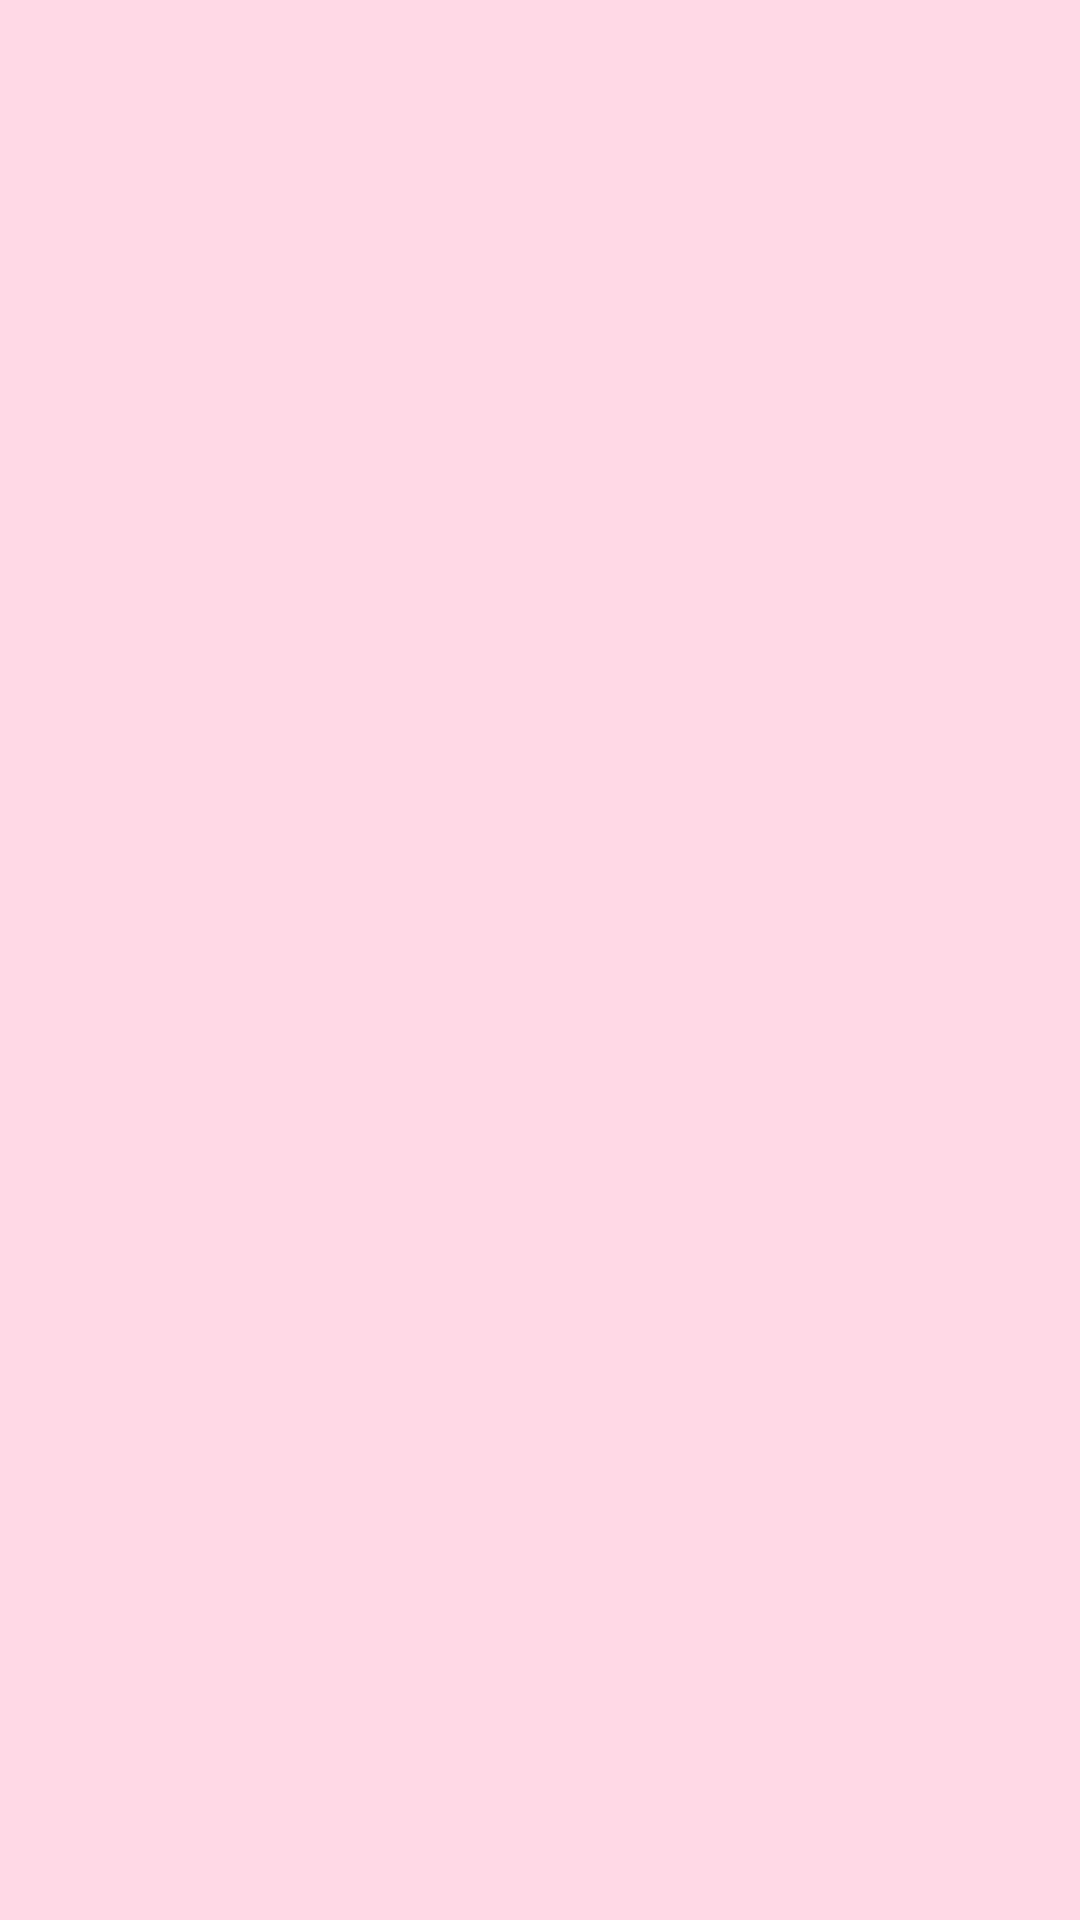 68+ Plain Pastel Pink Background Tumblr